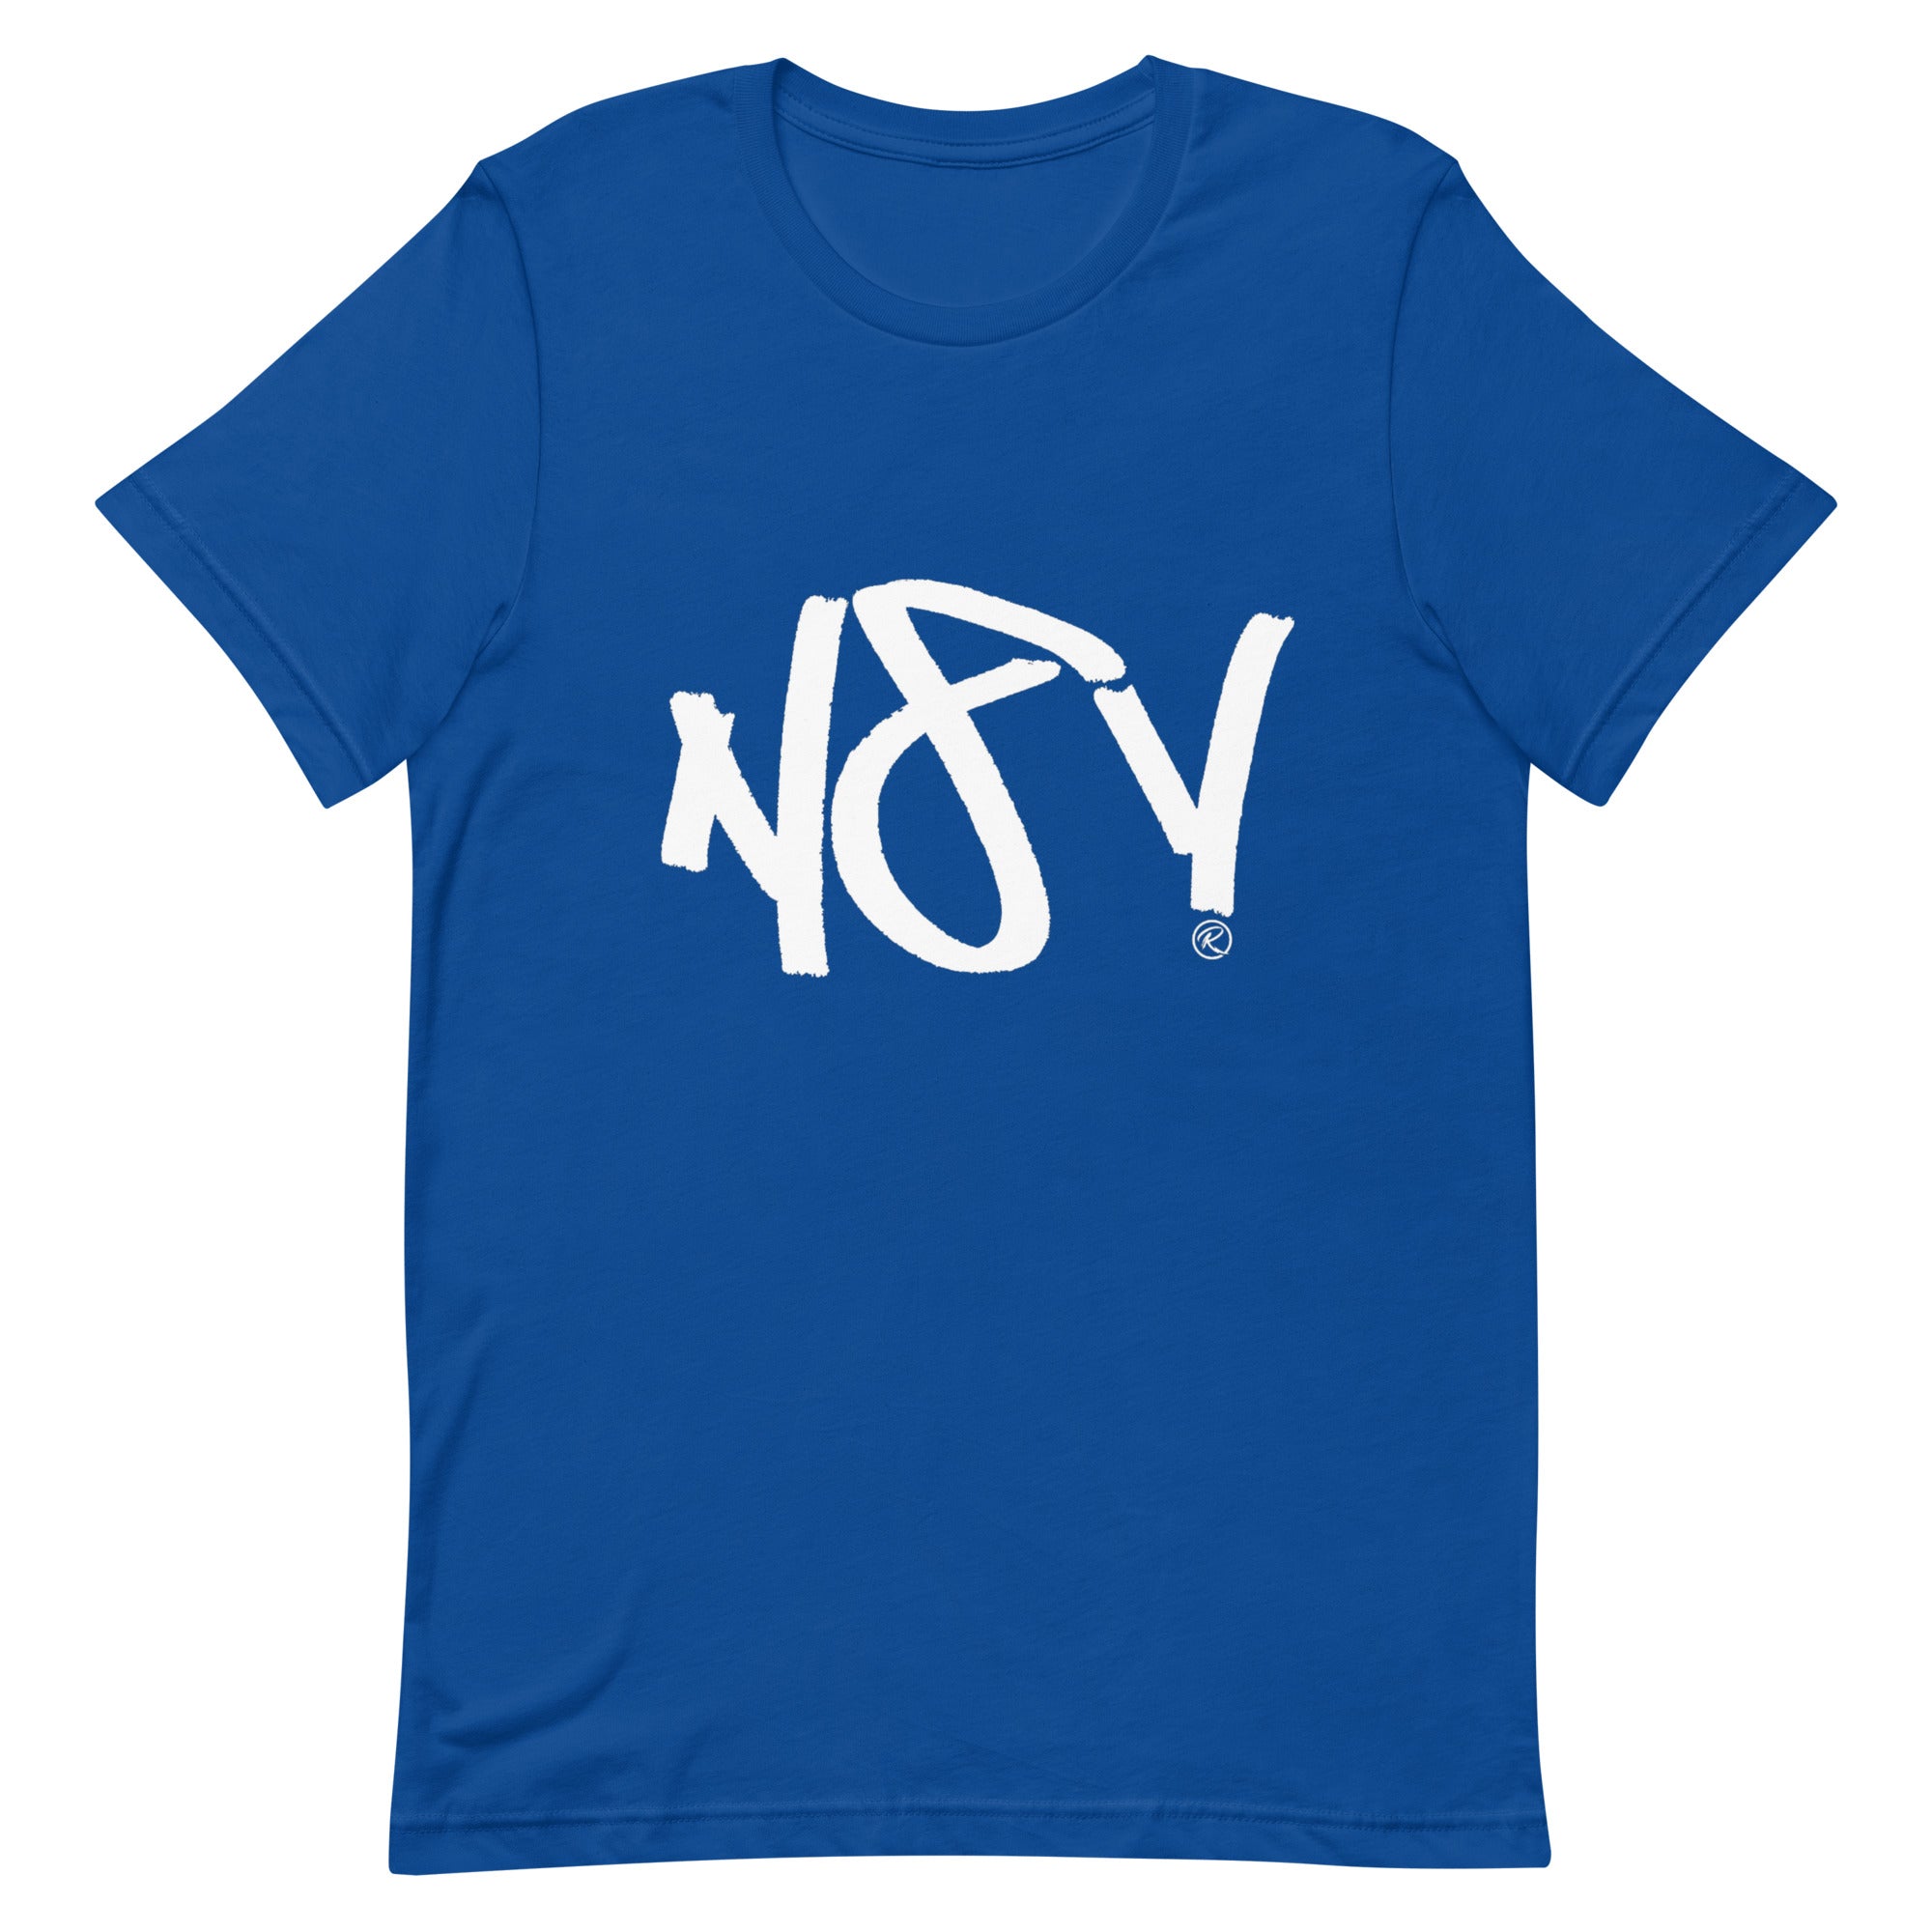 N8V T-shirt